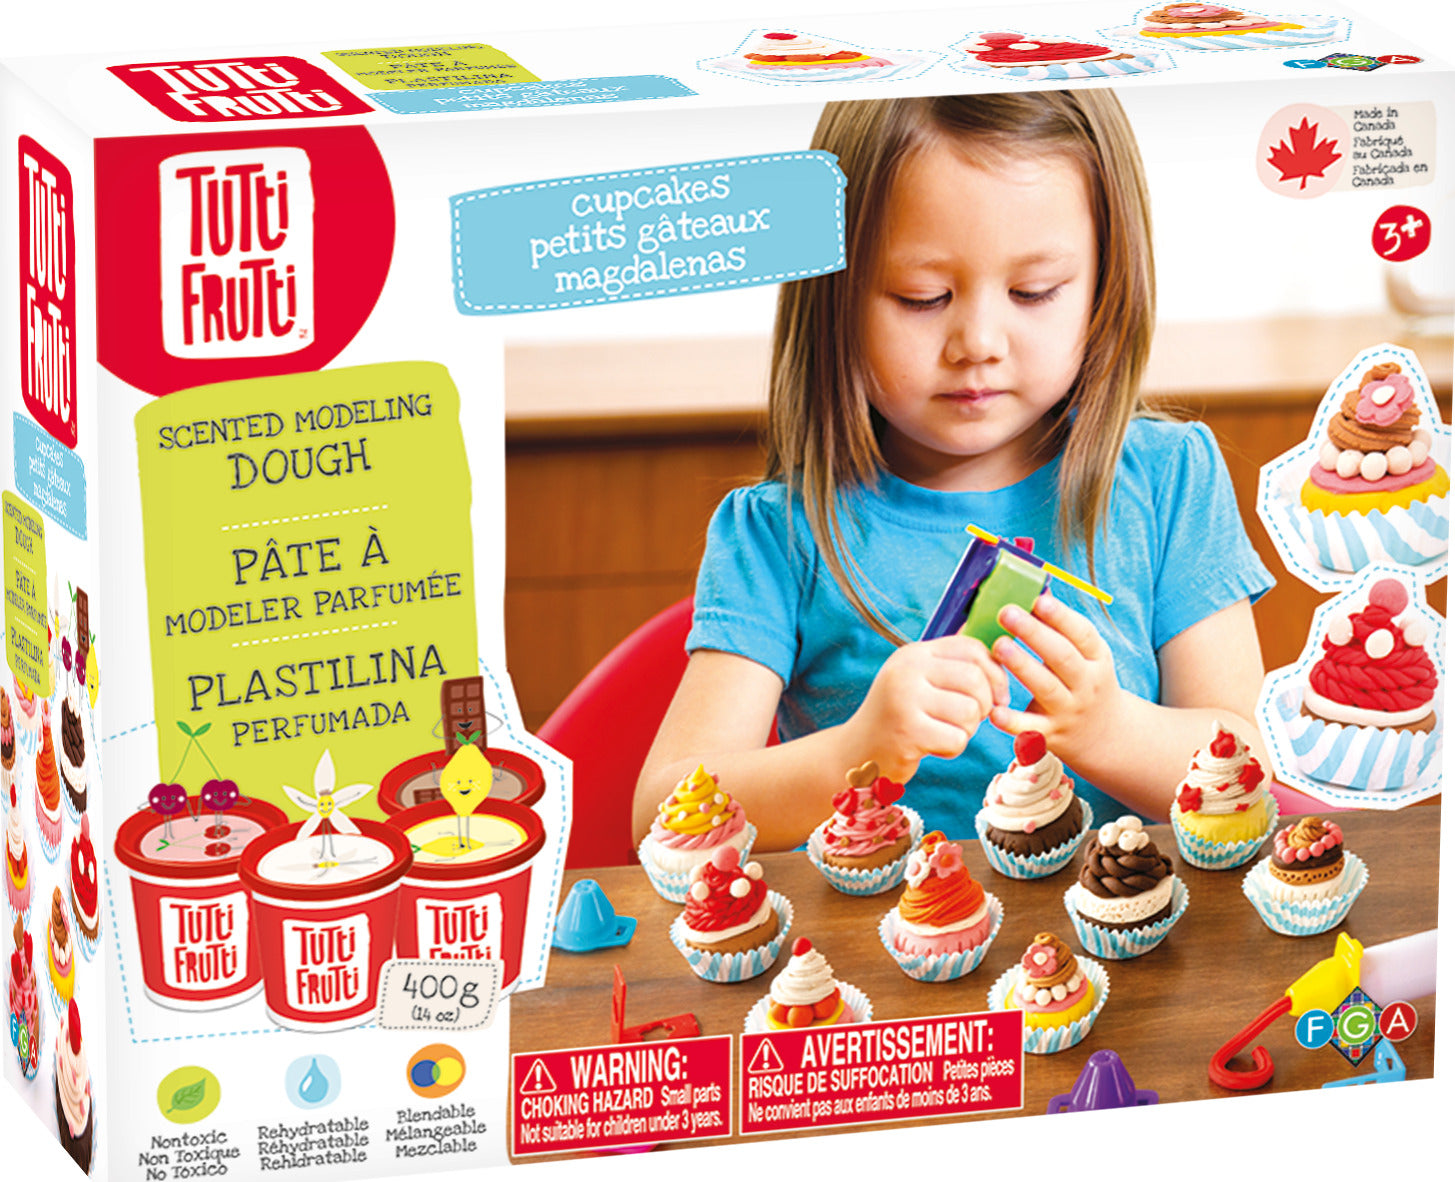 Tutti Frutti Cupcakes Kit